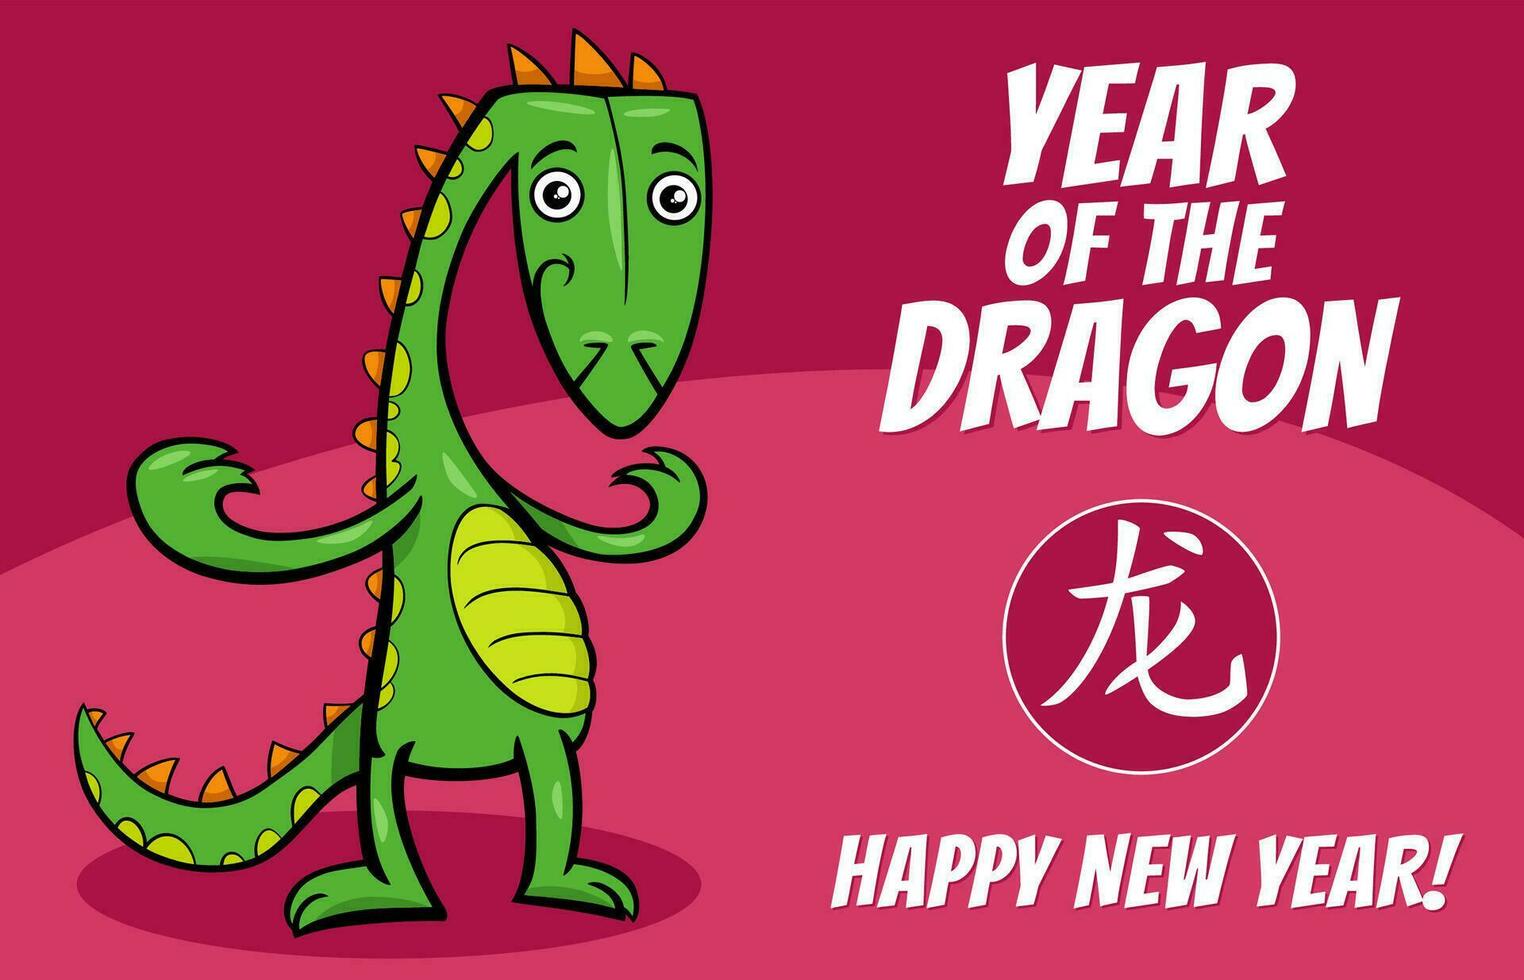 chinois Nouveau année conception avec dessin animé dragon personnage vecteur